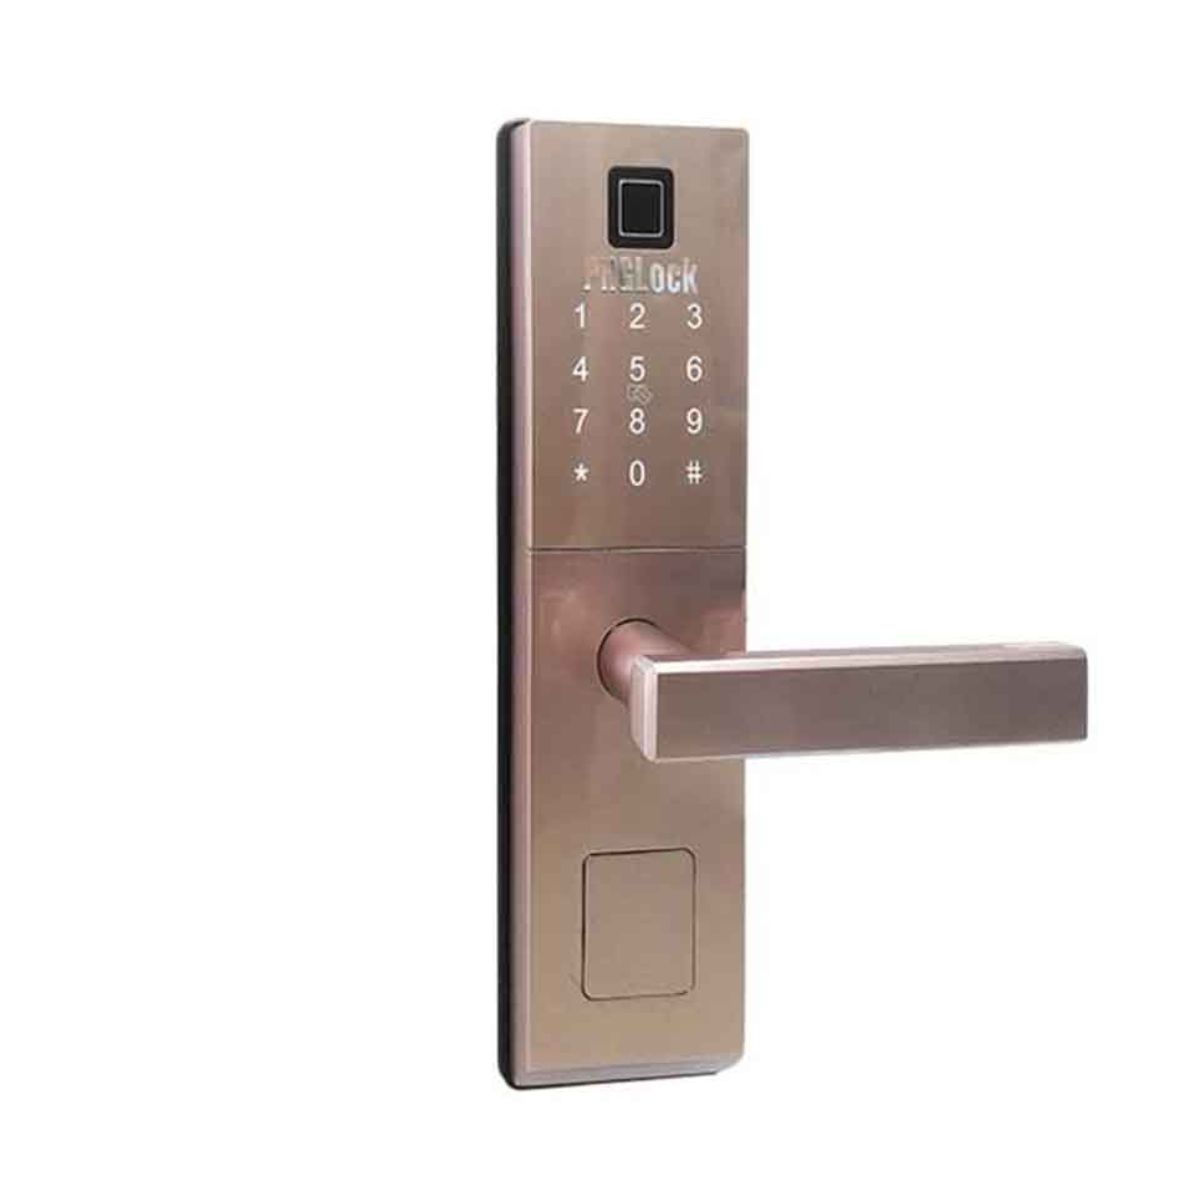 Khóa cửa phòng vân tay PHGLock FP6021 màu Amber Silver, dùng thẻ MI, mật mã, vân tay và chìa khóa cơ 